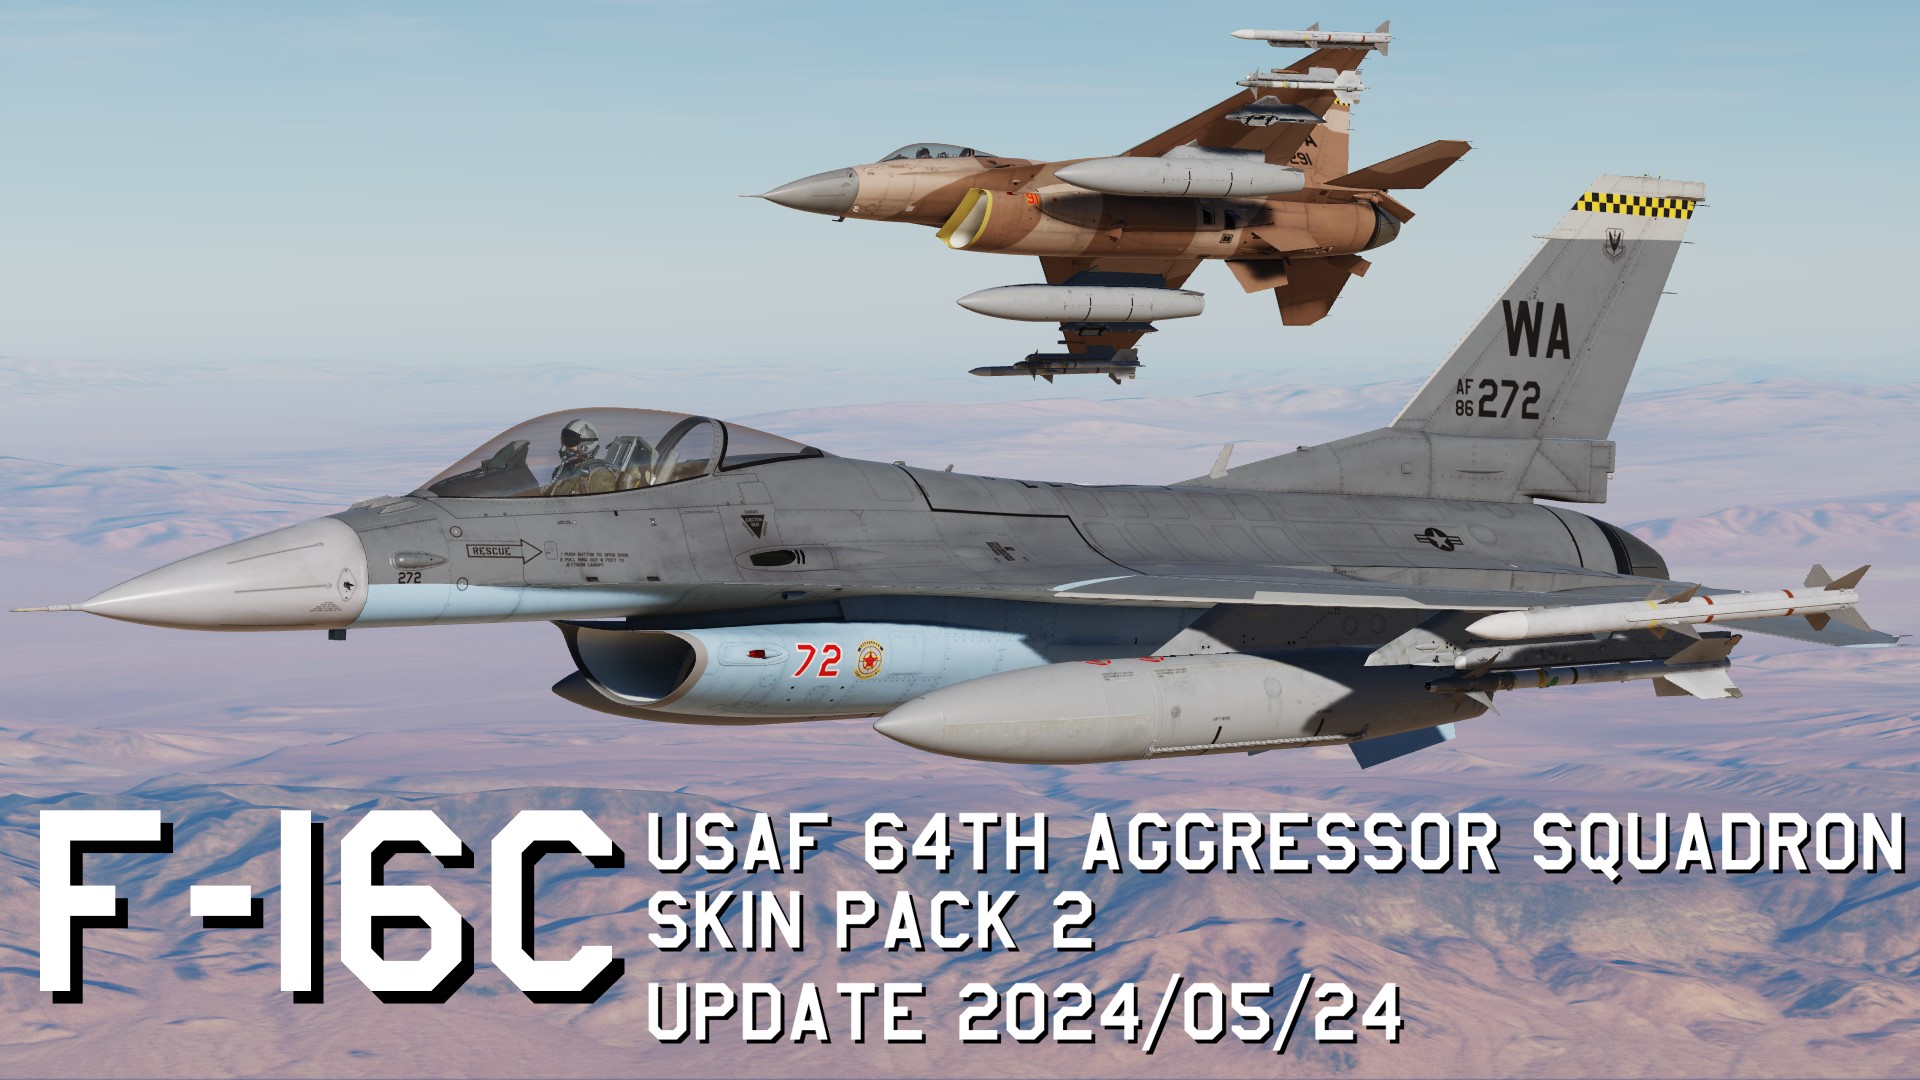 F-16C USAF 64th Aggressor Squadron Skin Pack 2 update 2024/05/24